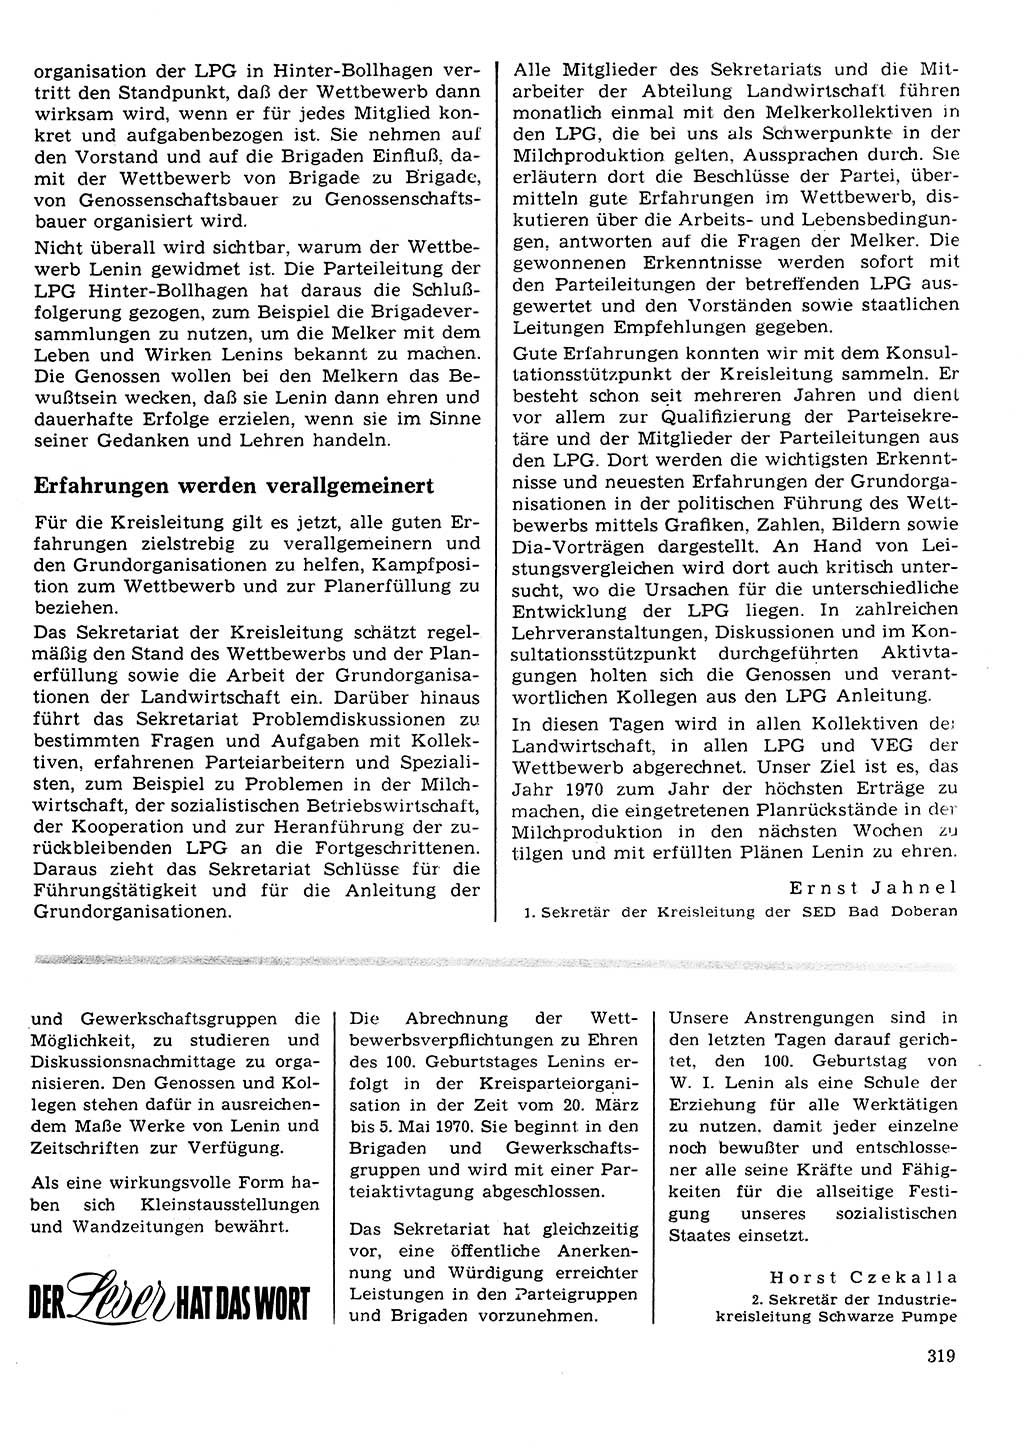 Neuer Weg (NW), Organ des Zentralkomitees (ZK) der SED (Sozialistische Einheitspartei Deutschlands) für Fragen des Parteilebens, 25. Jahrgang [Deutsche Demokratische Republik (DDR)] 1970, Seite 319 (NW ZK SED DDR 1970, S. 319)